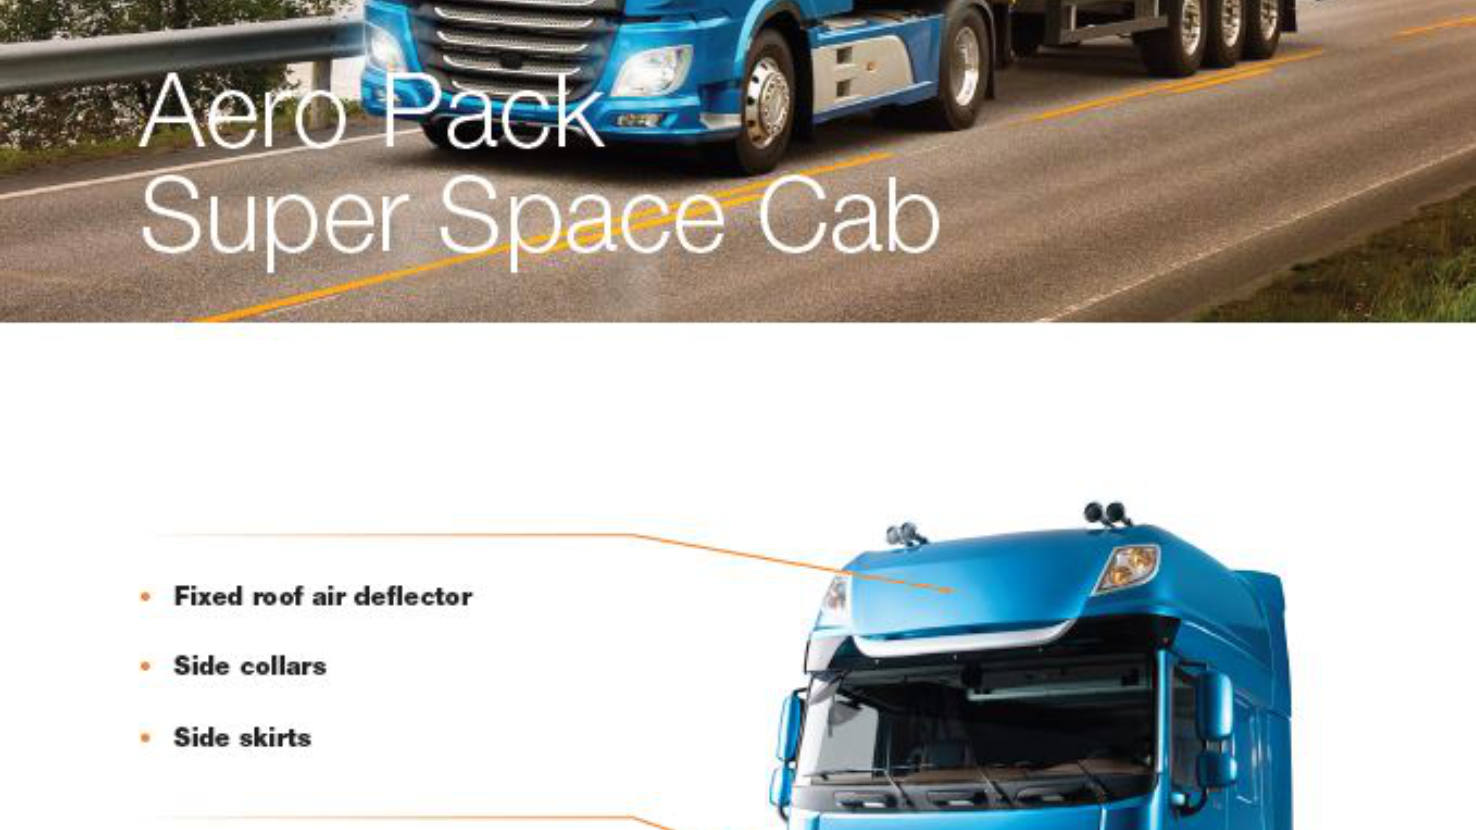 Aero Pack Super Space Cab